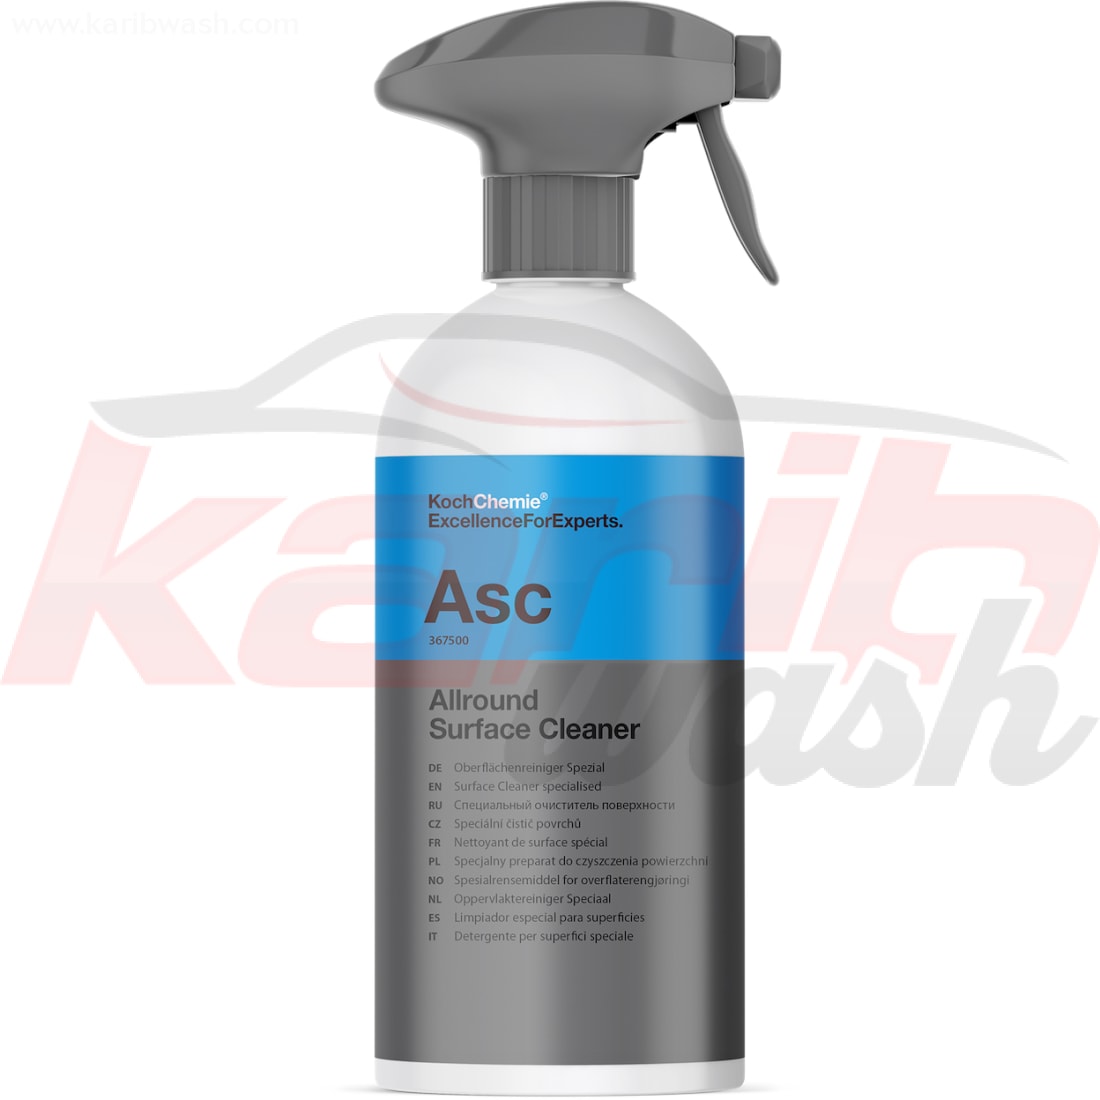 Allround Surface Cleaner (ASC) - KochChemie - KARIBWASH